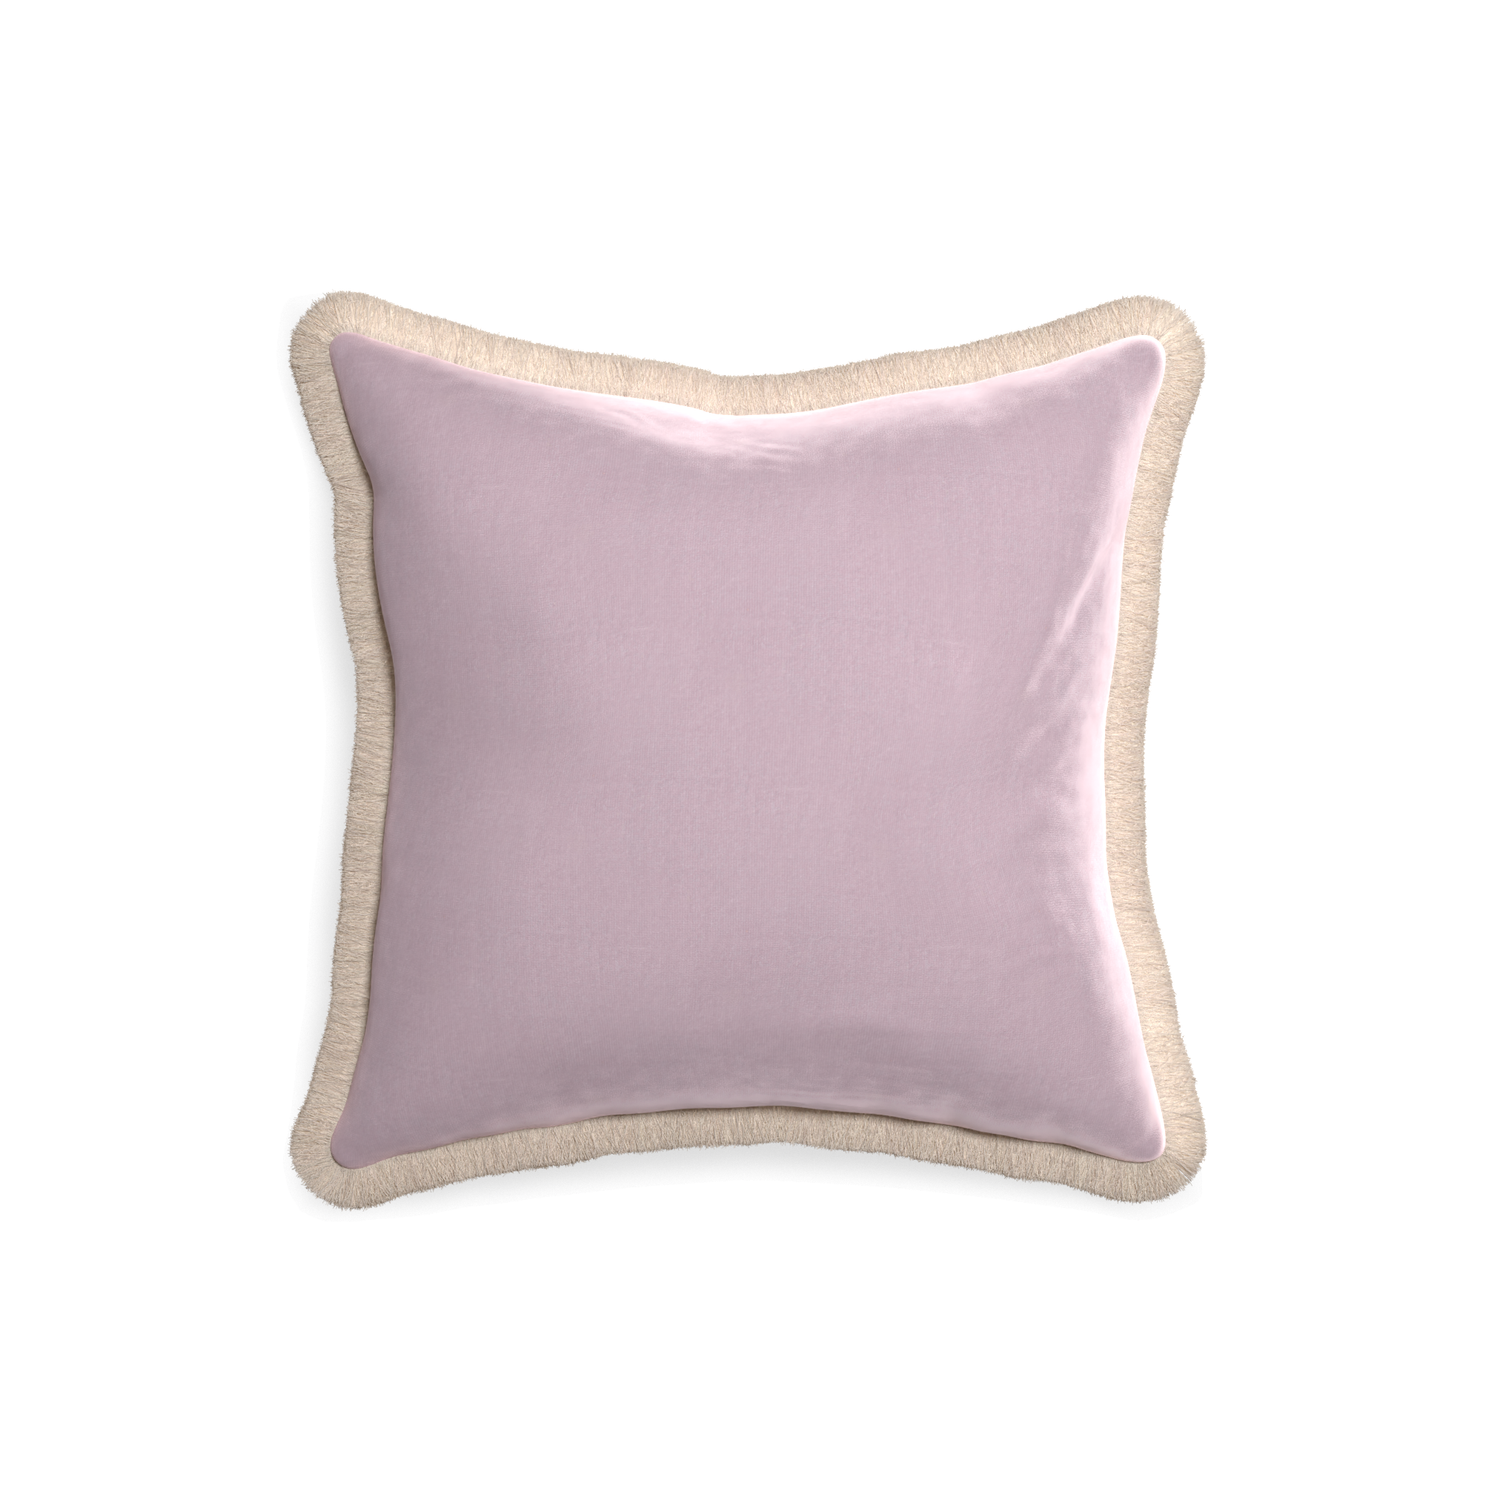 18-square lilac velvet custom pillow with cream fringe on white background